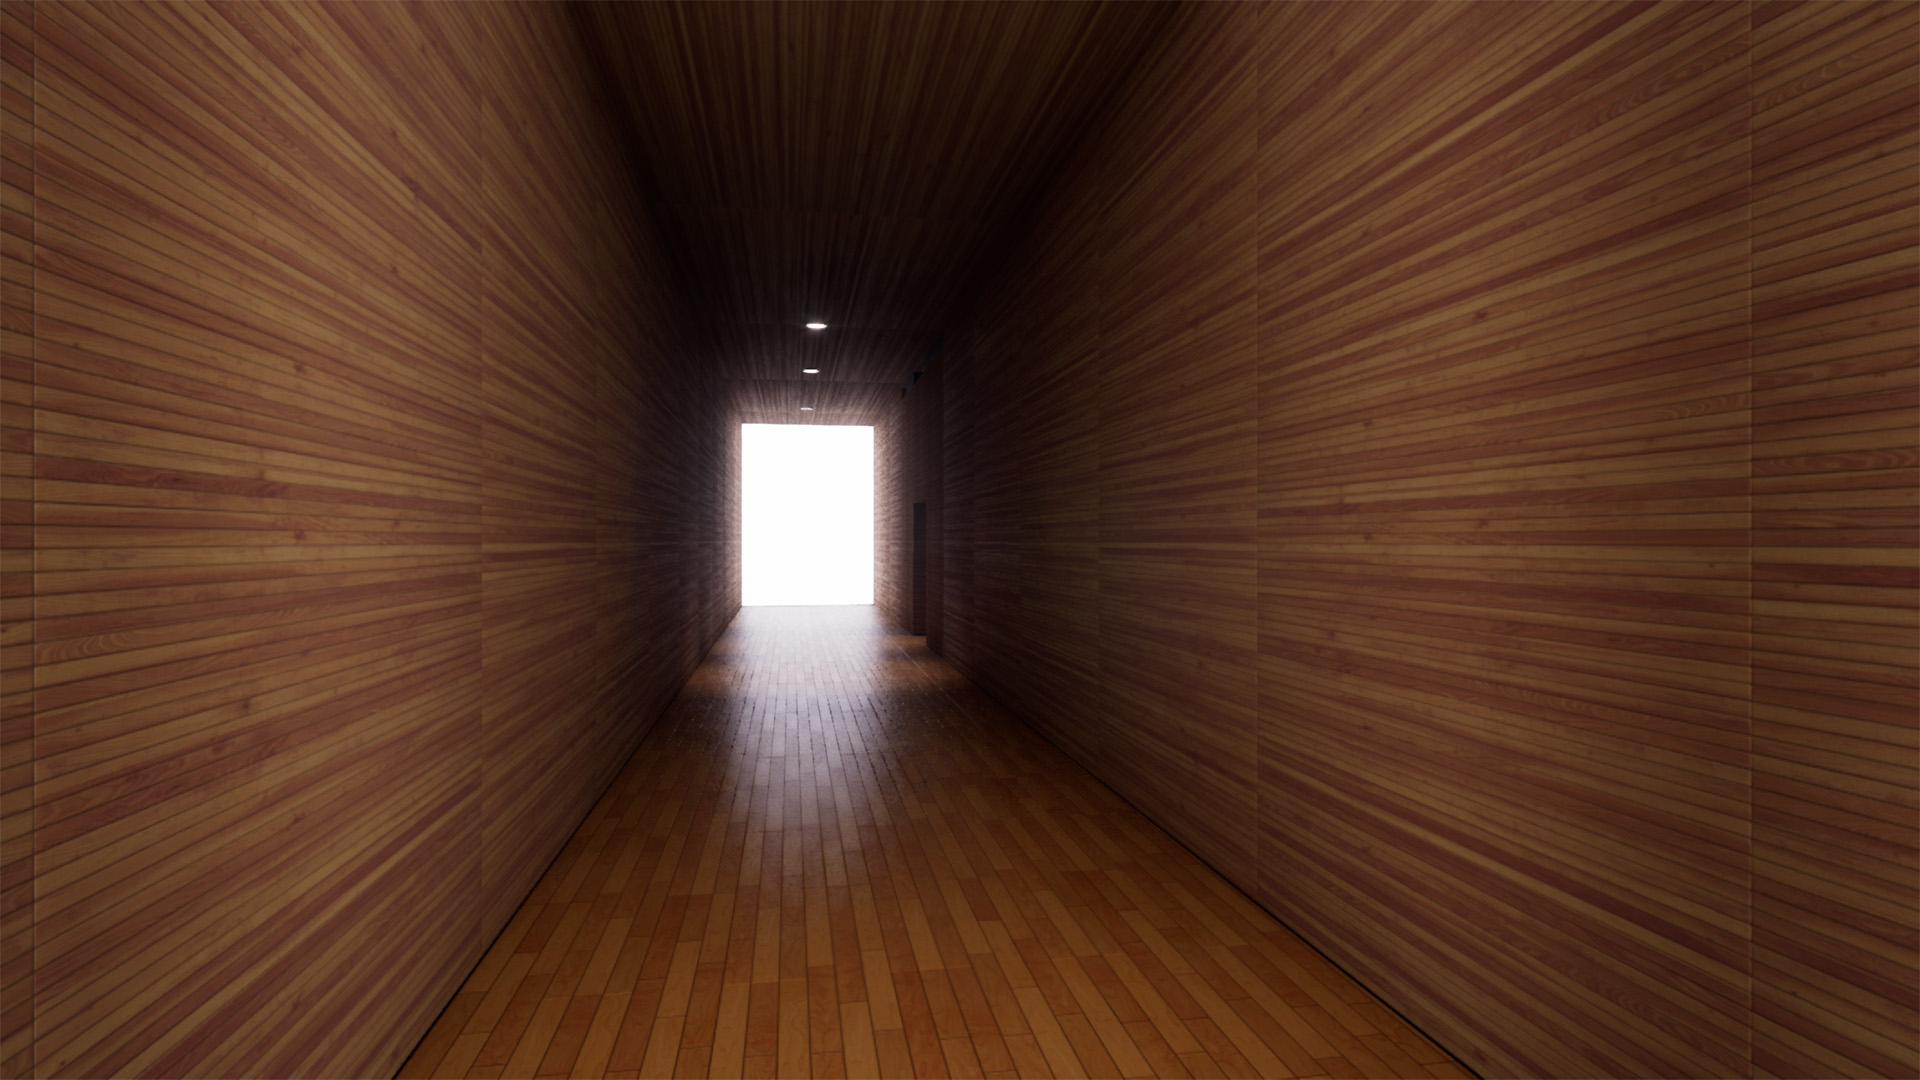 Wood Passage (廊下)